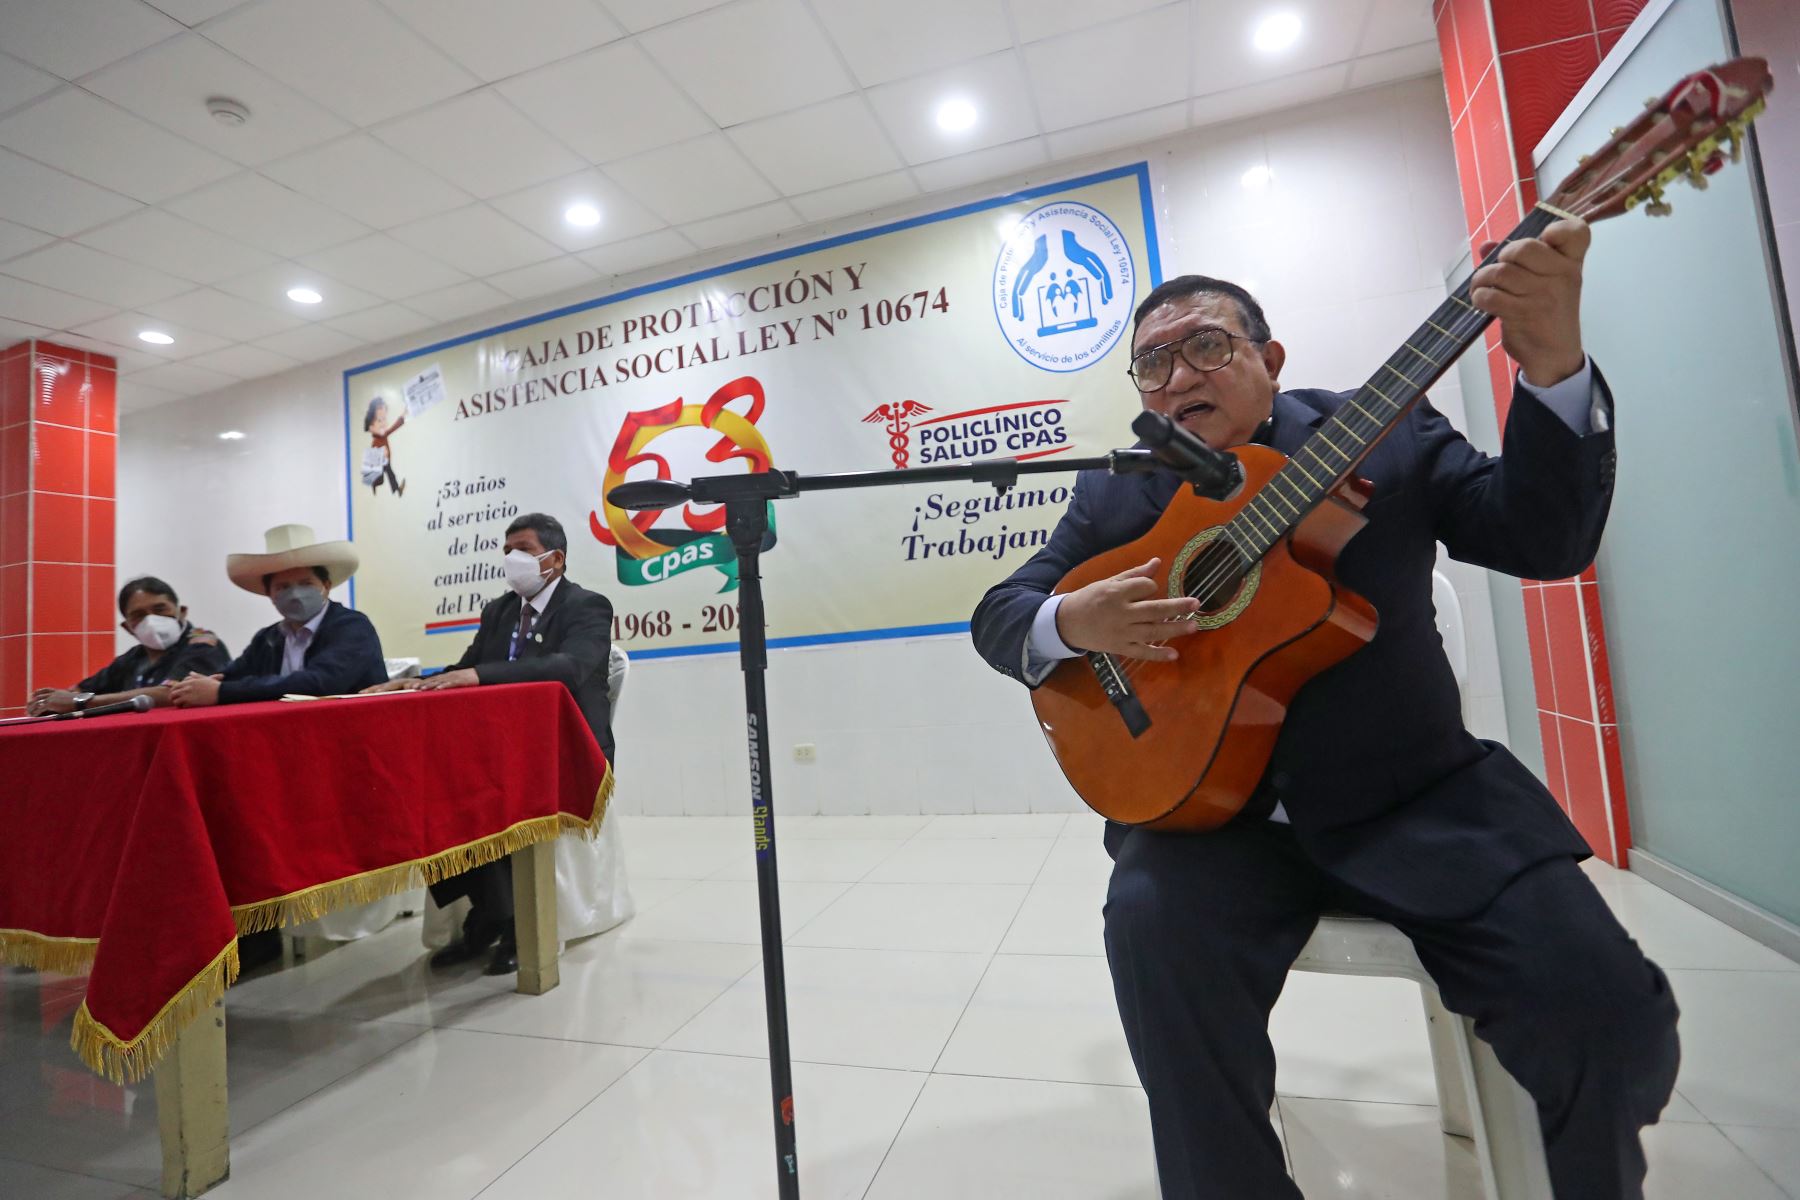 El presidente de la República, Pedro Castillo, participó en la ceremonia por el 53.° aniversario de la Caja de Protección y Asistencia Social (CPAS).
Foto: ANDINA/ Prensa Presidencia